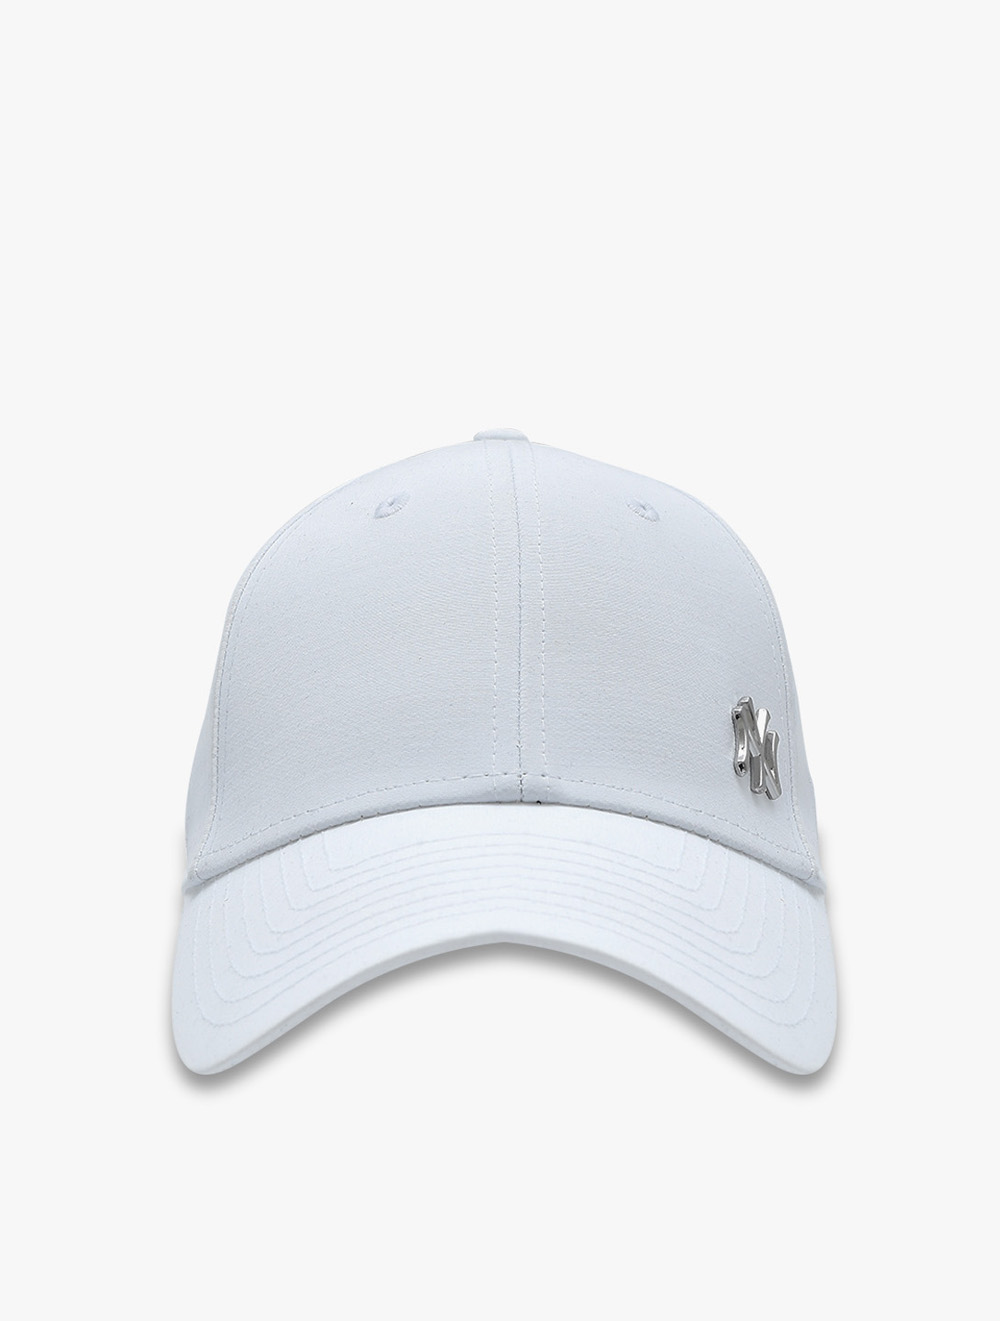 Buy New Era 940 NEYYAN Men's Caps - White, Foot Locker VN